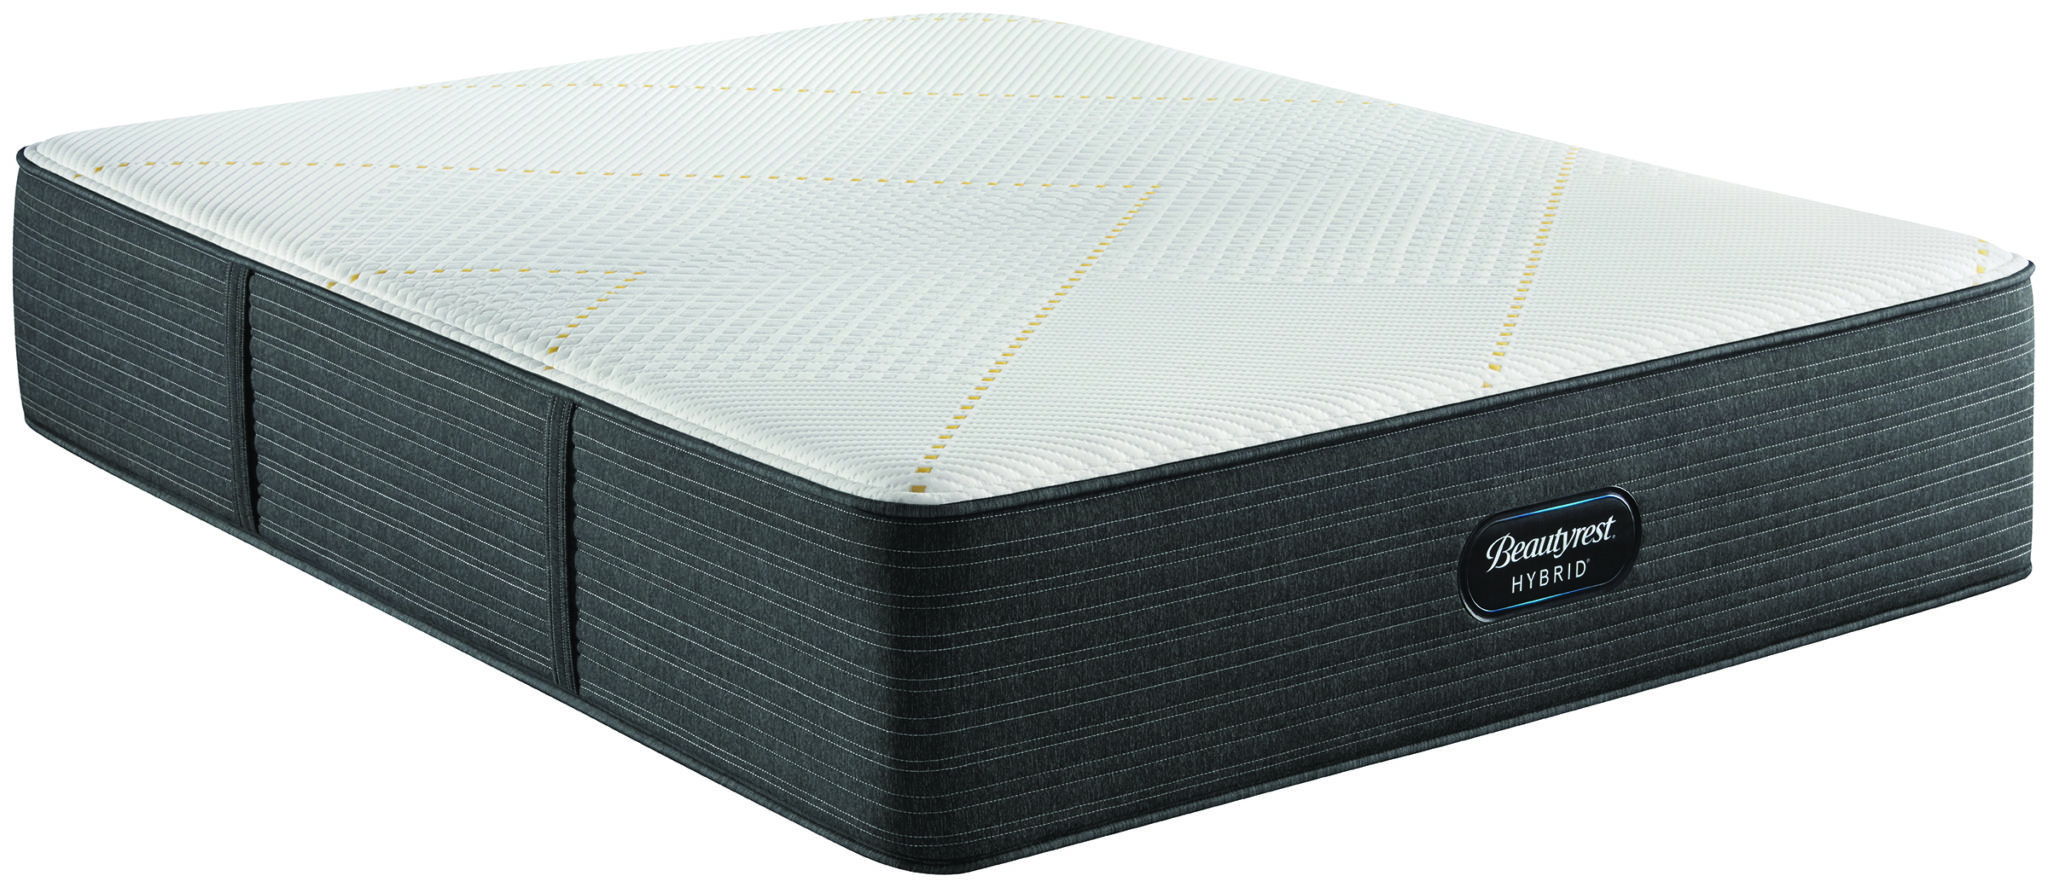 beautyrest black hybrid x-class mattress